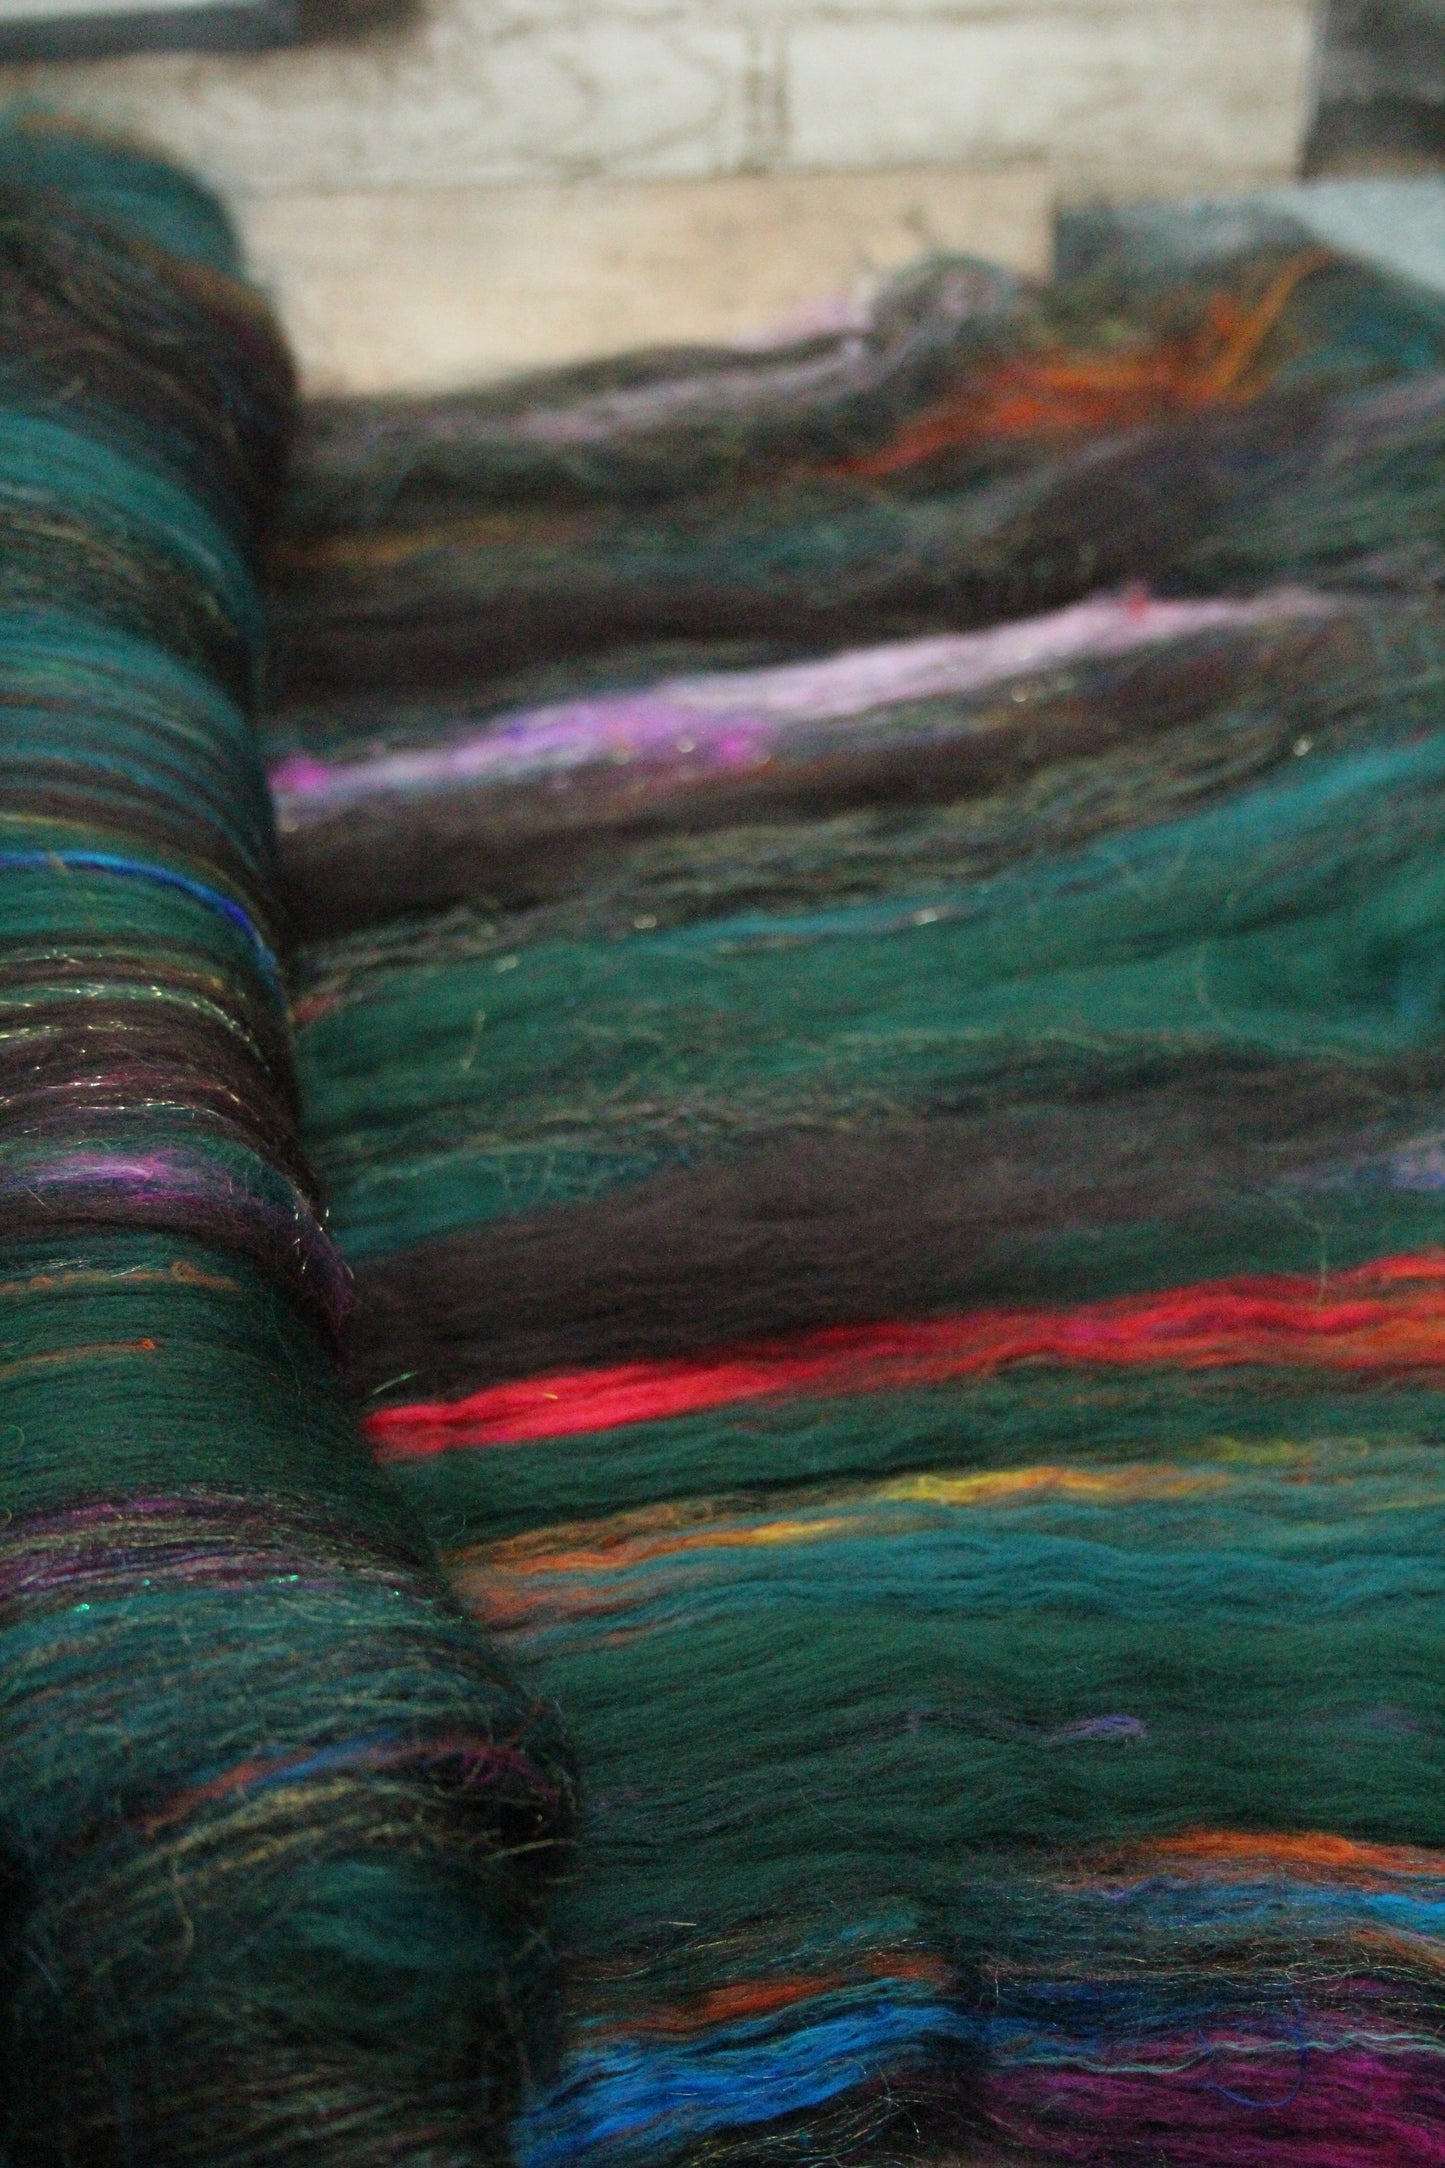 Art Batt  -  Green Brown Black -  153 grams 5.3 oz - Wool for felting, spinning and weaving